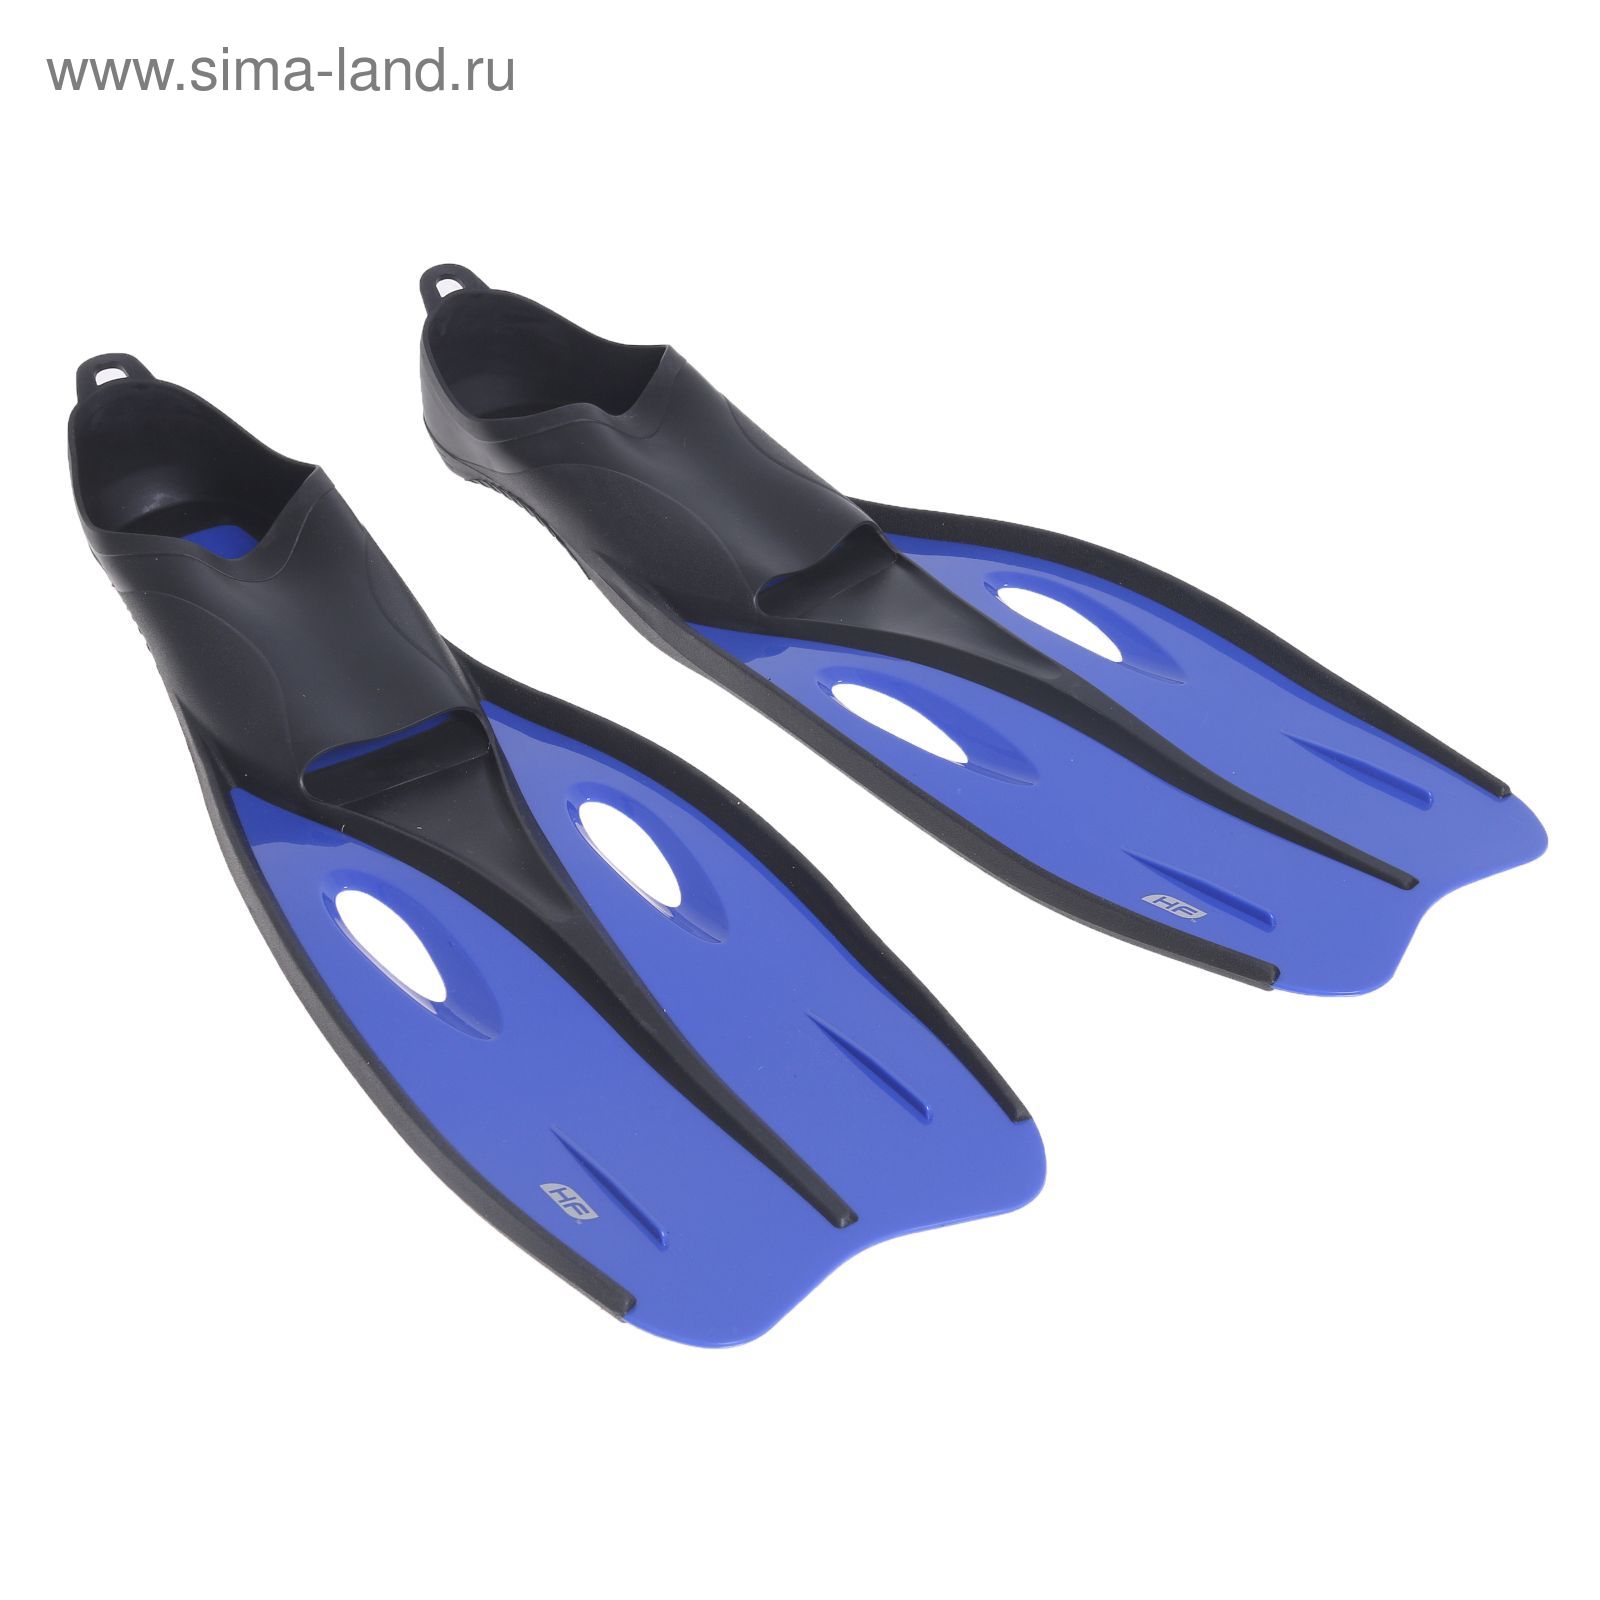 Ласты Endura Dive, для взрослых, размер 42-44, цвет МИКС Bestway